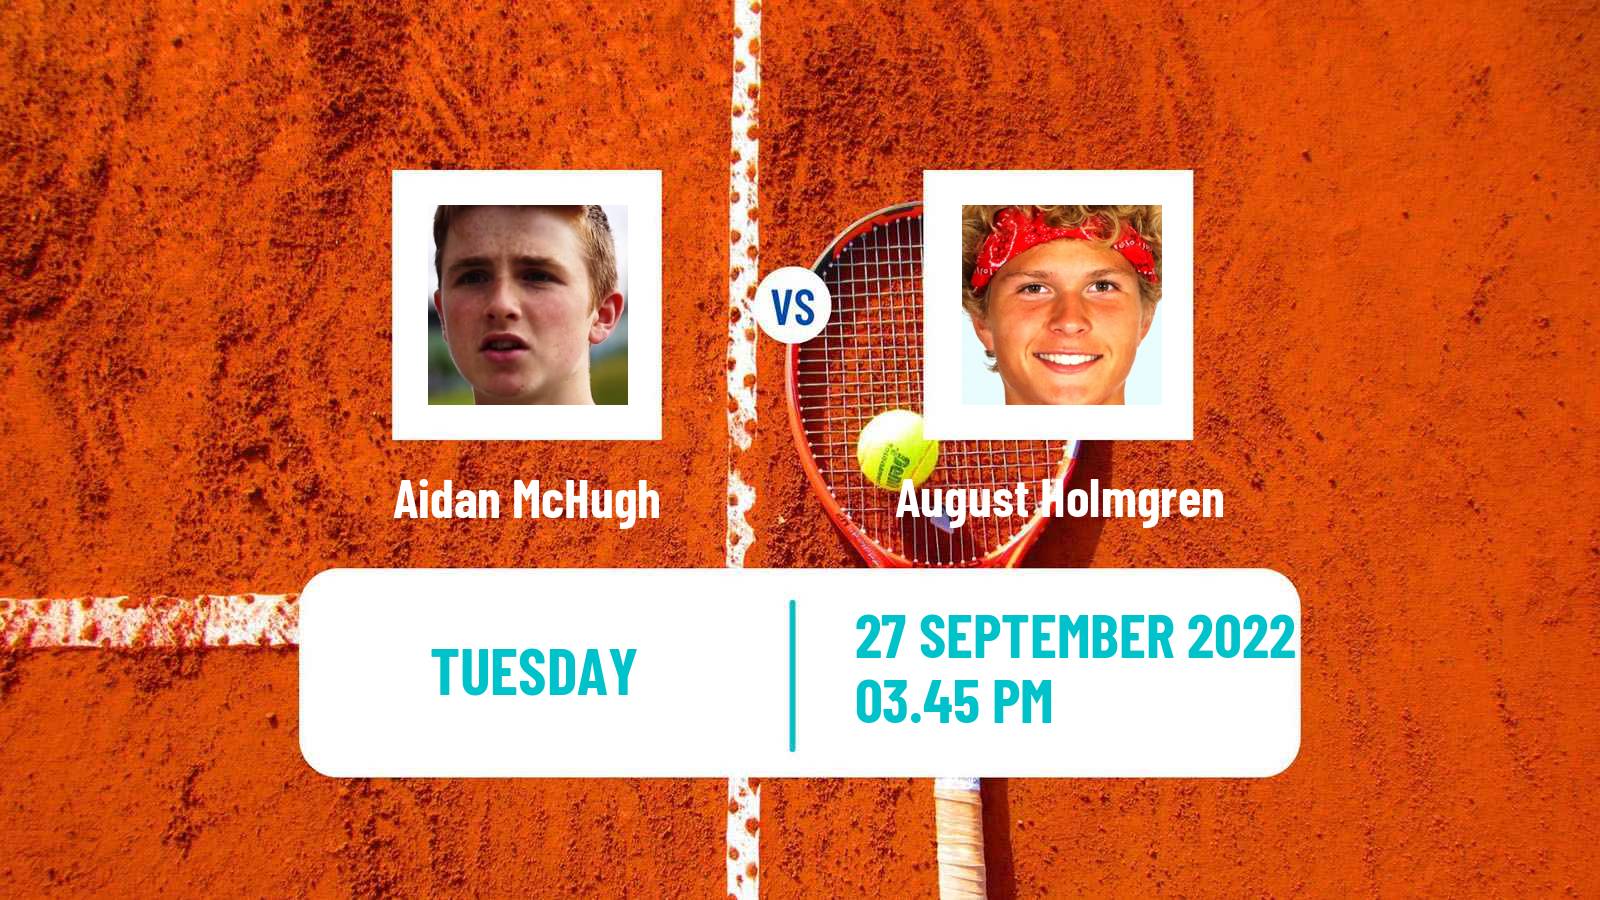 Tennis ATP Challenger Aidan McHugh - August Holmgren